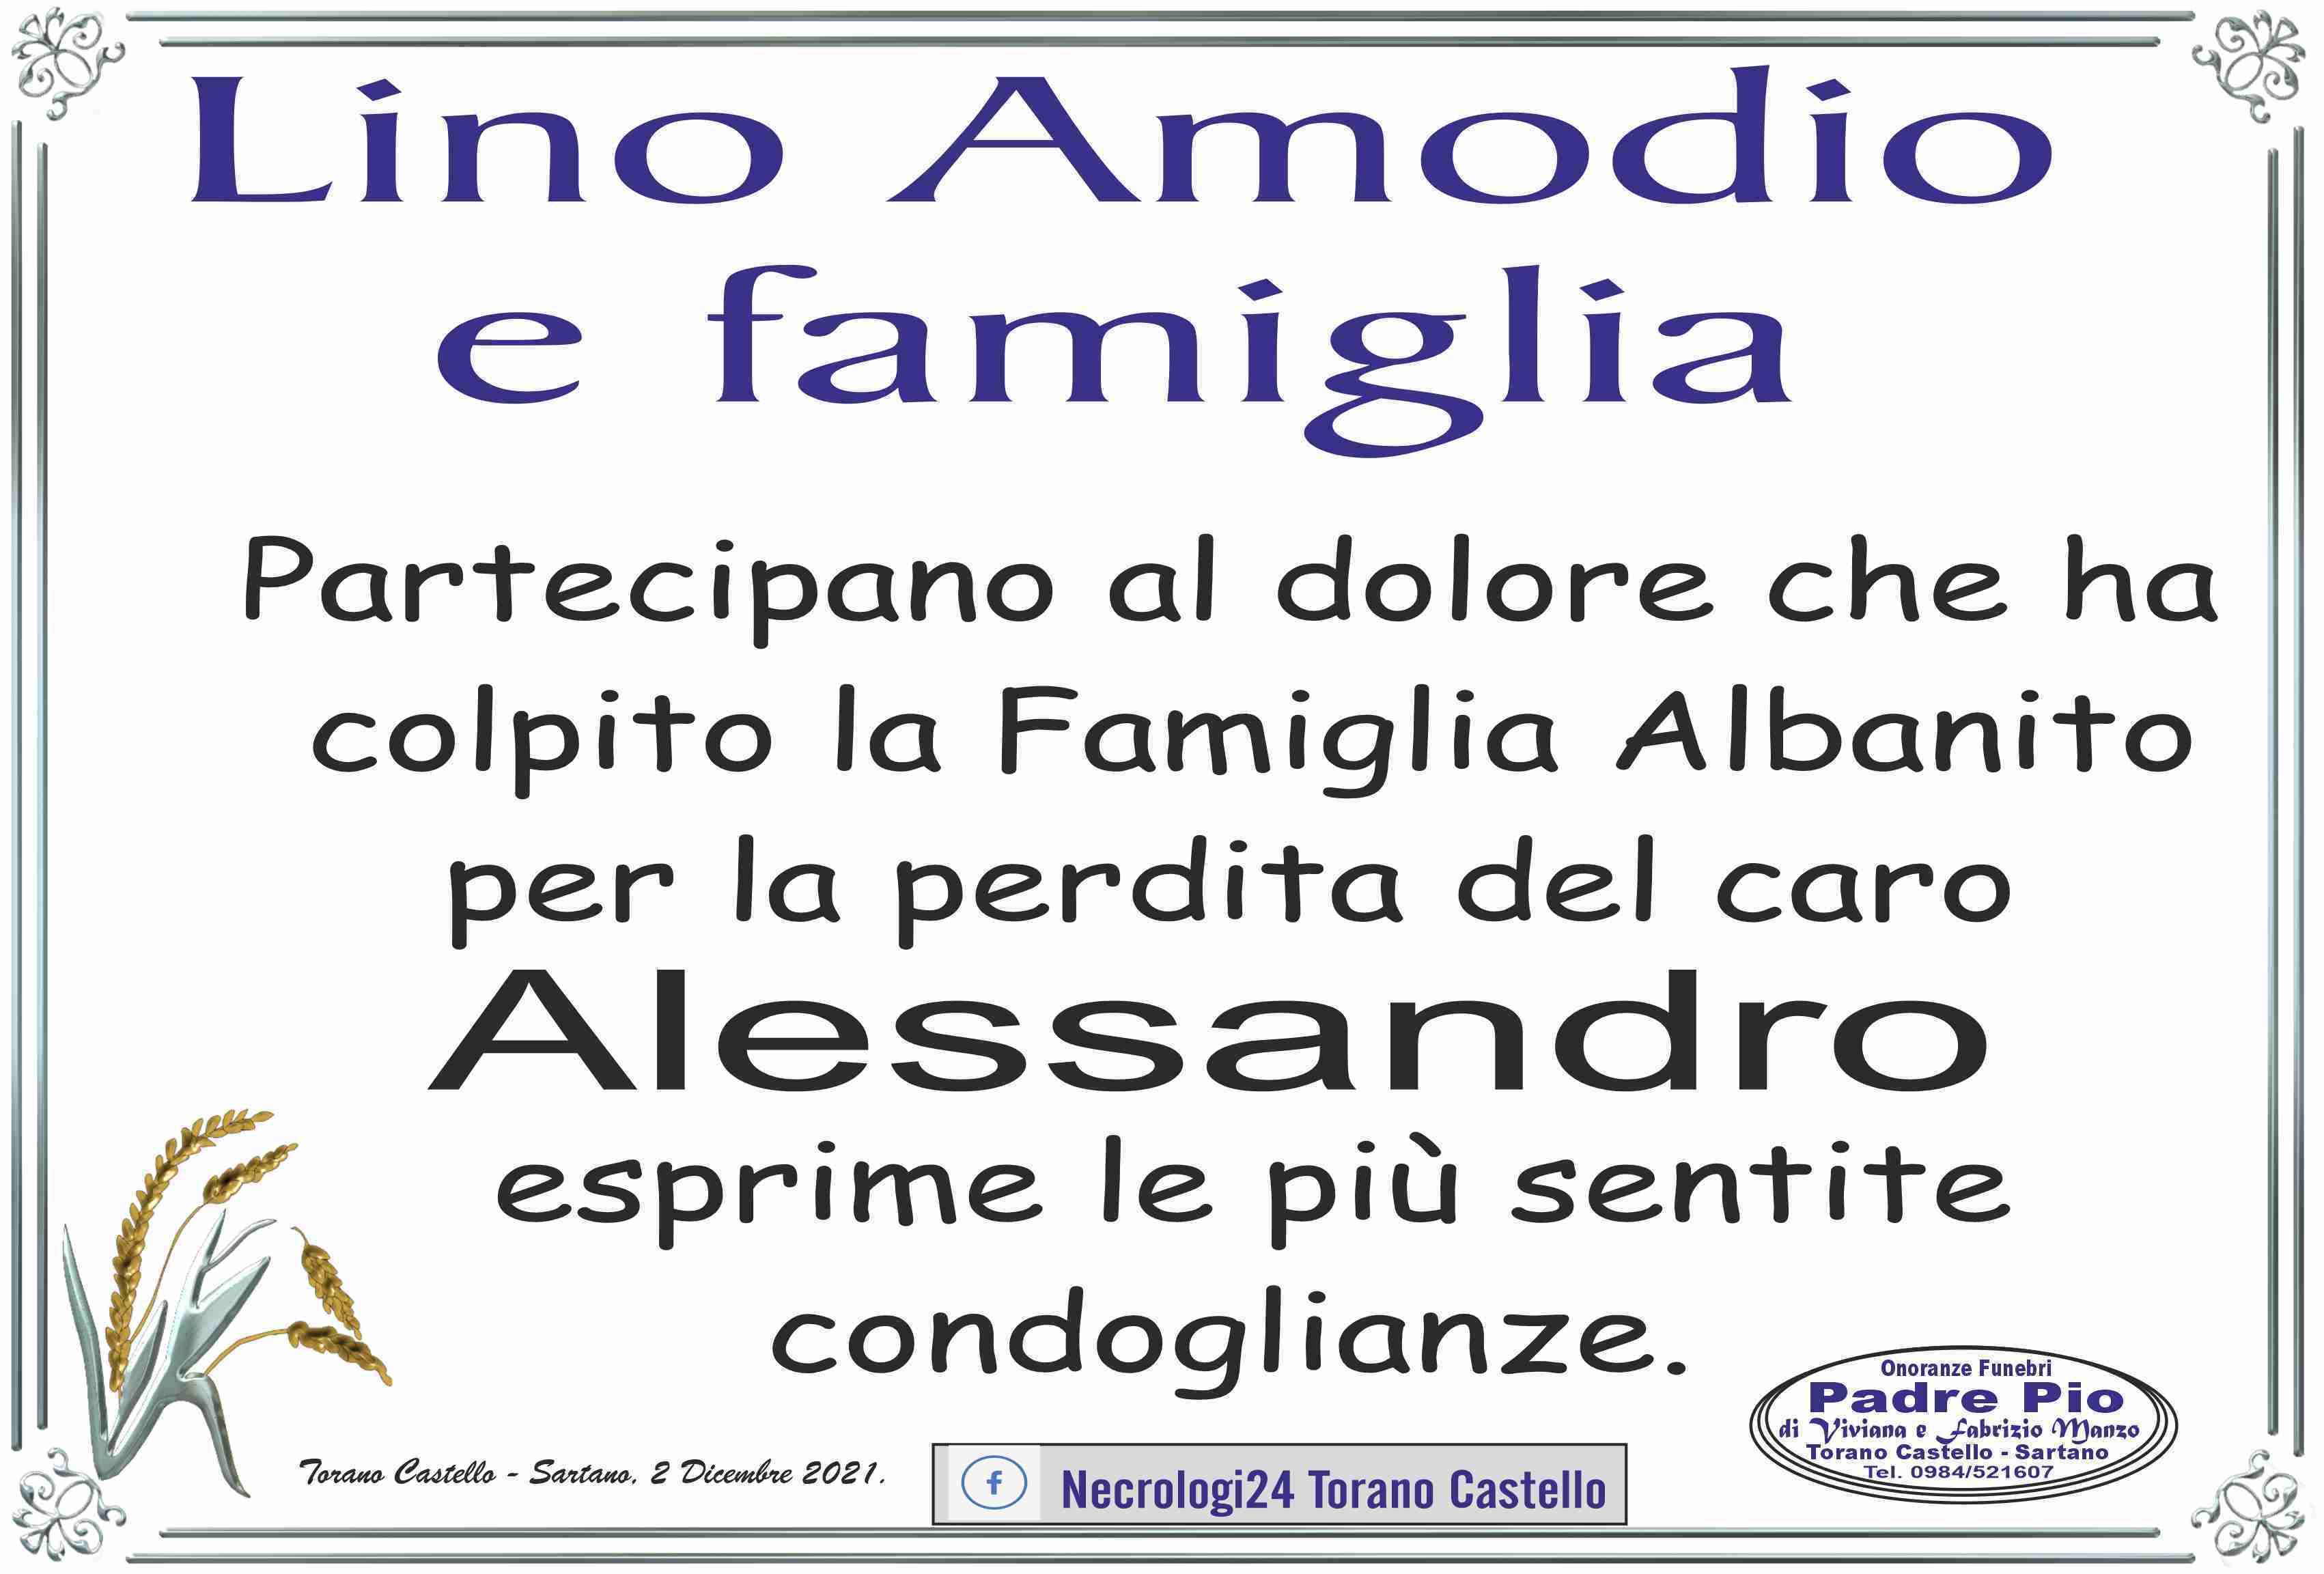 Alessandro Albanito